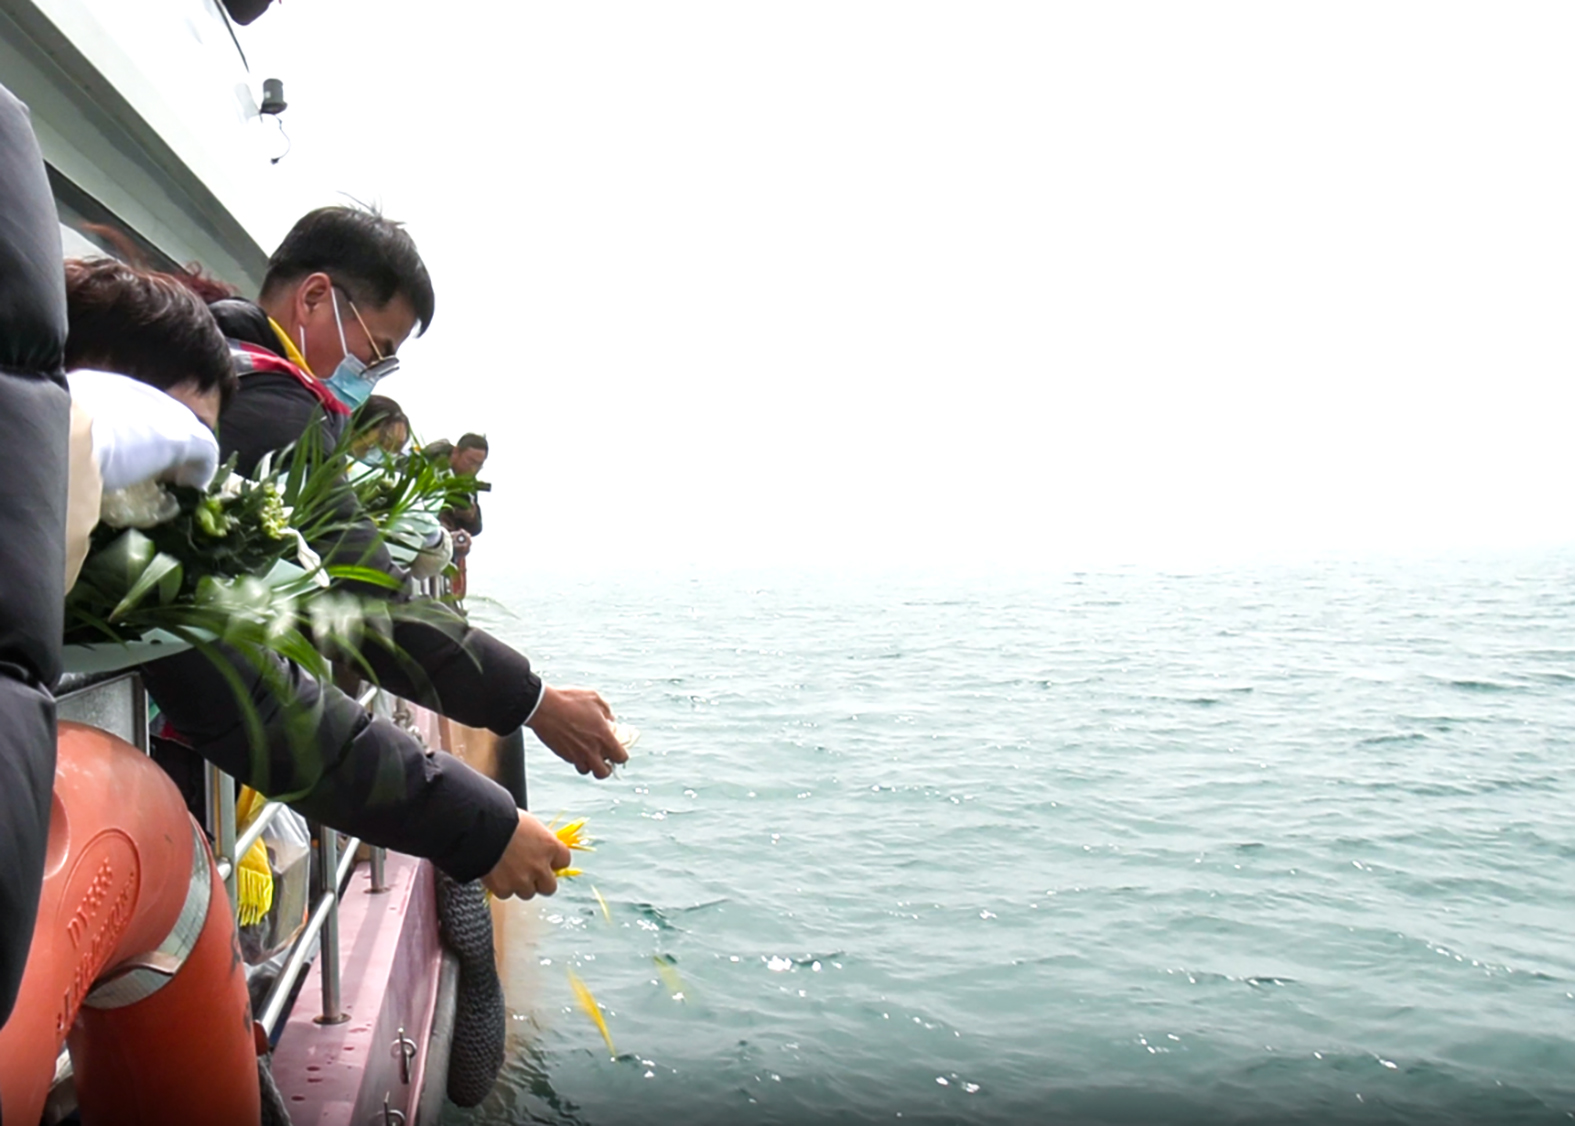 5 逝者家属在海上追思照片3——撒花瓣、水溶纸信封寄托哀思.jpg